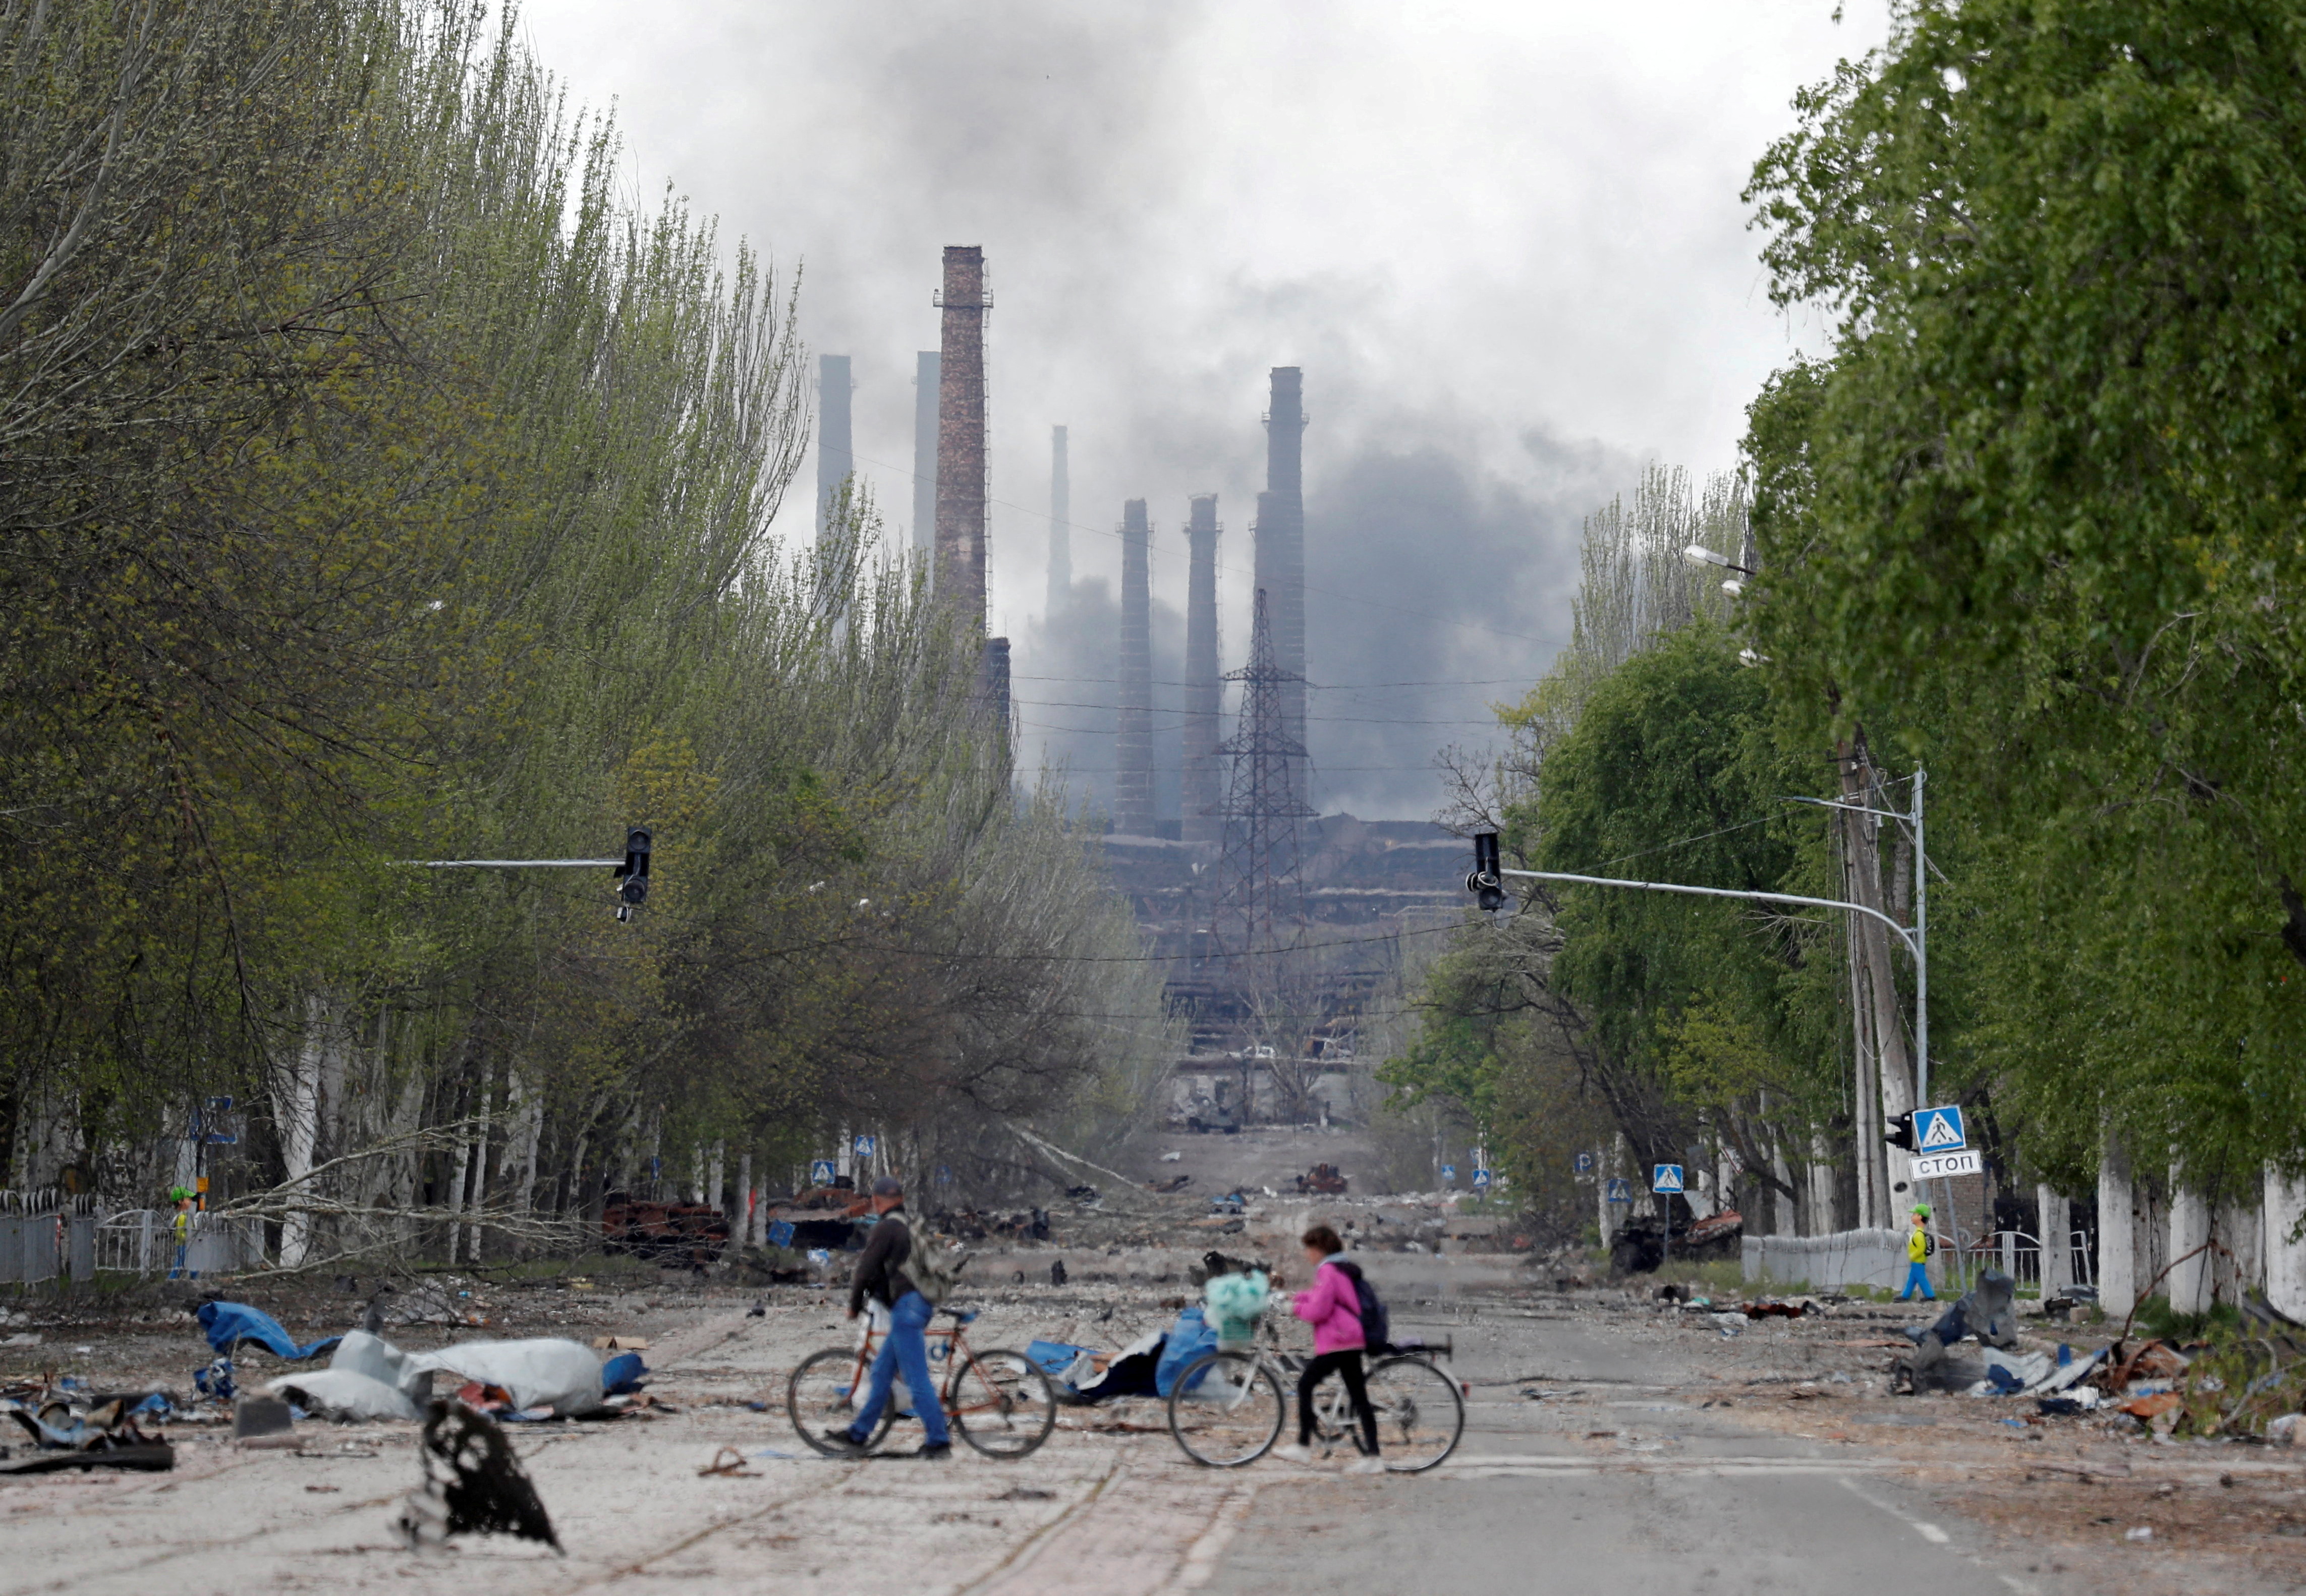 FOTO DE ARCHIVO: La gente camina con sus bicicletas por la calle mientras el humo se eleva por encima de una planta de Azovstal Iron and Steel Works durante el conflicto entre Ucrania y Rusia en la ciudad portuaria del sur de Mariupol, Ucrania 2 de mayo de 2022. REUTERS/Alexander Ermochenko